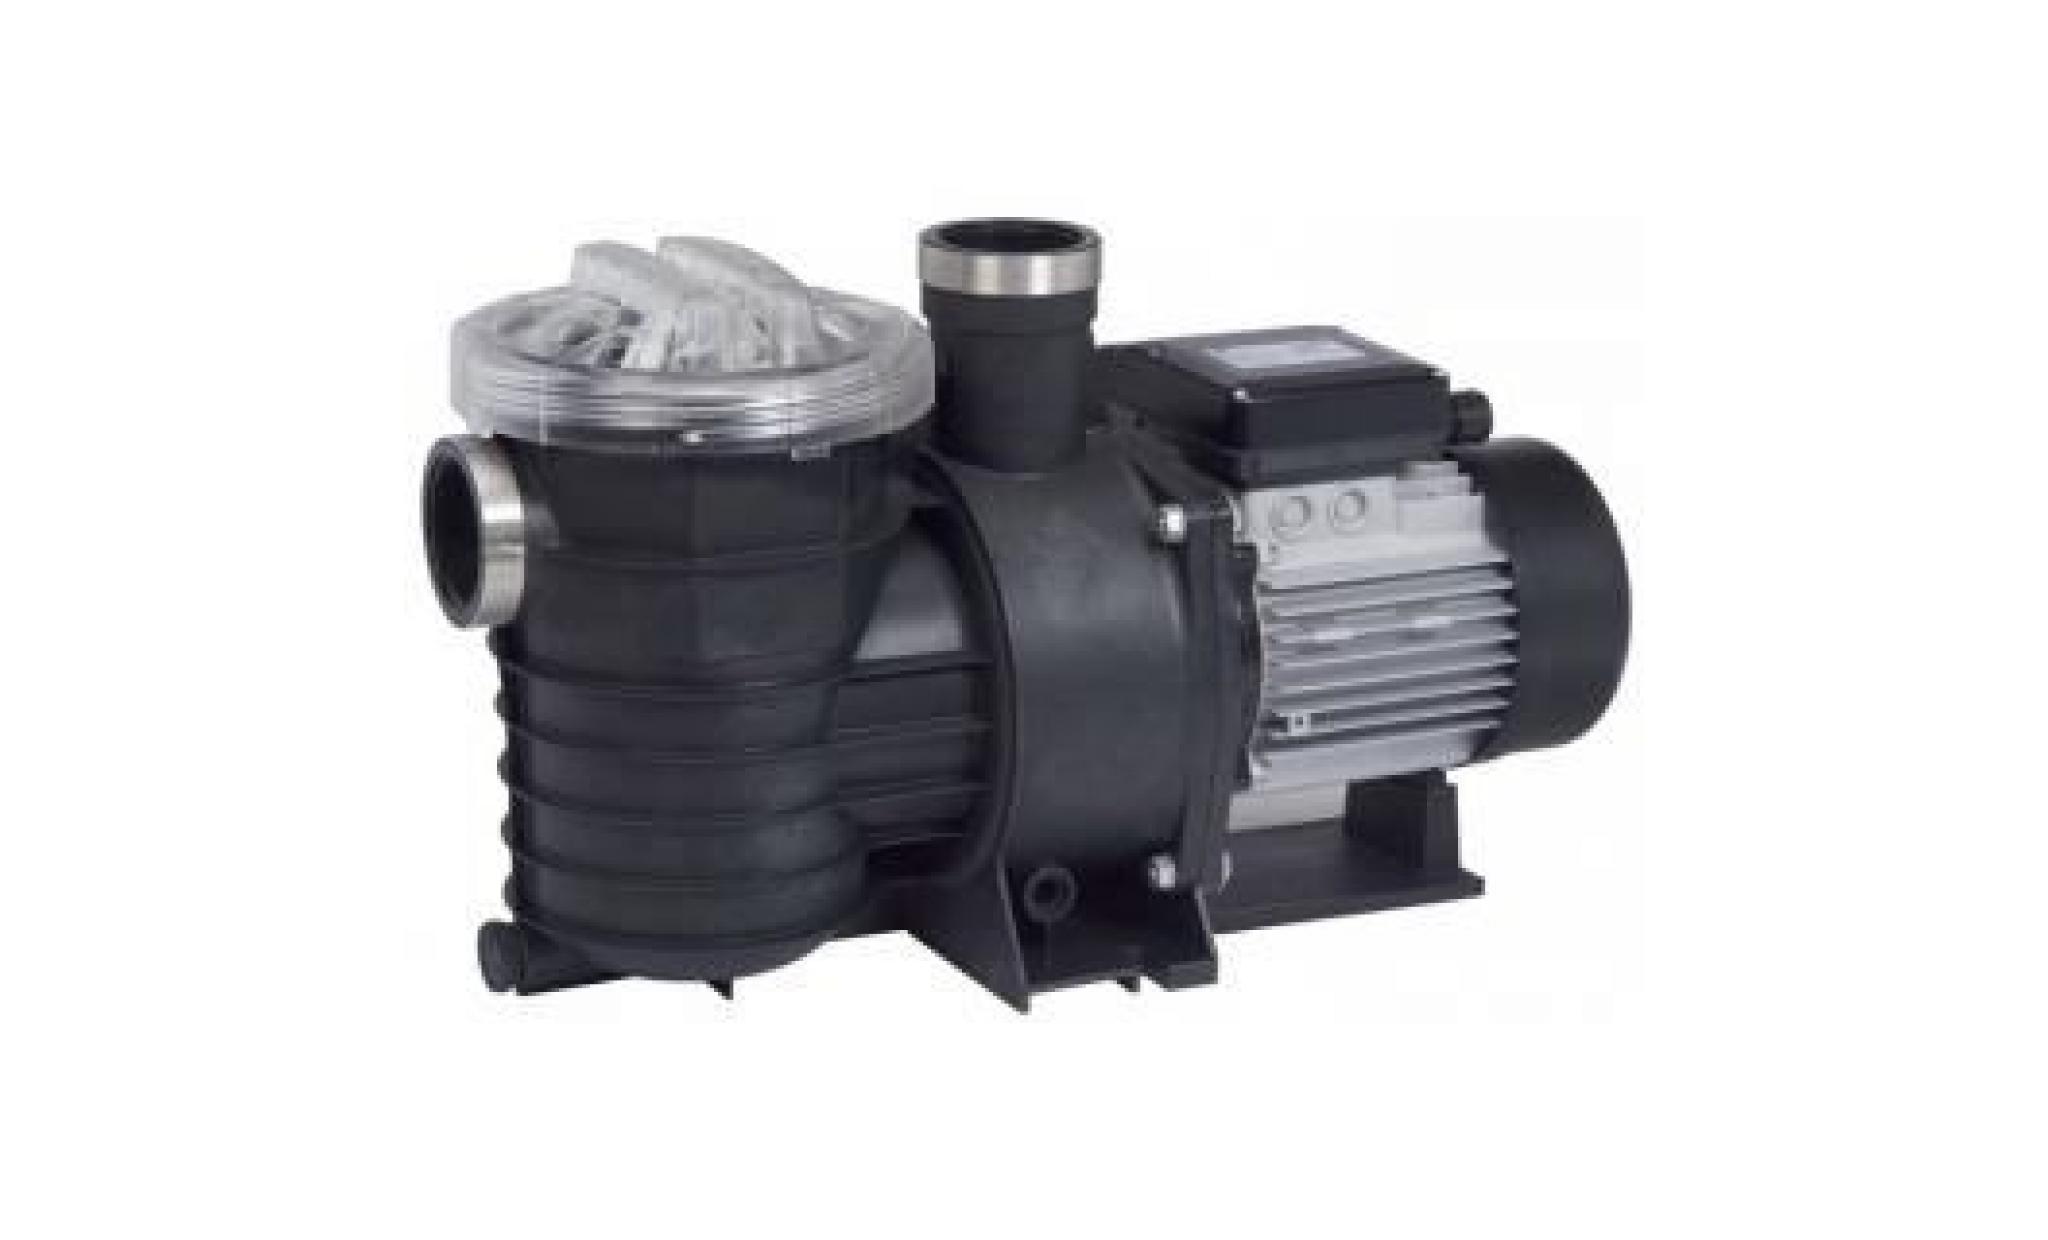 pompe filtration piscine ksb filtra n 18 m3/h tri